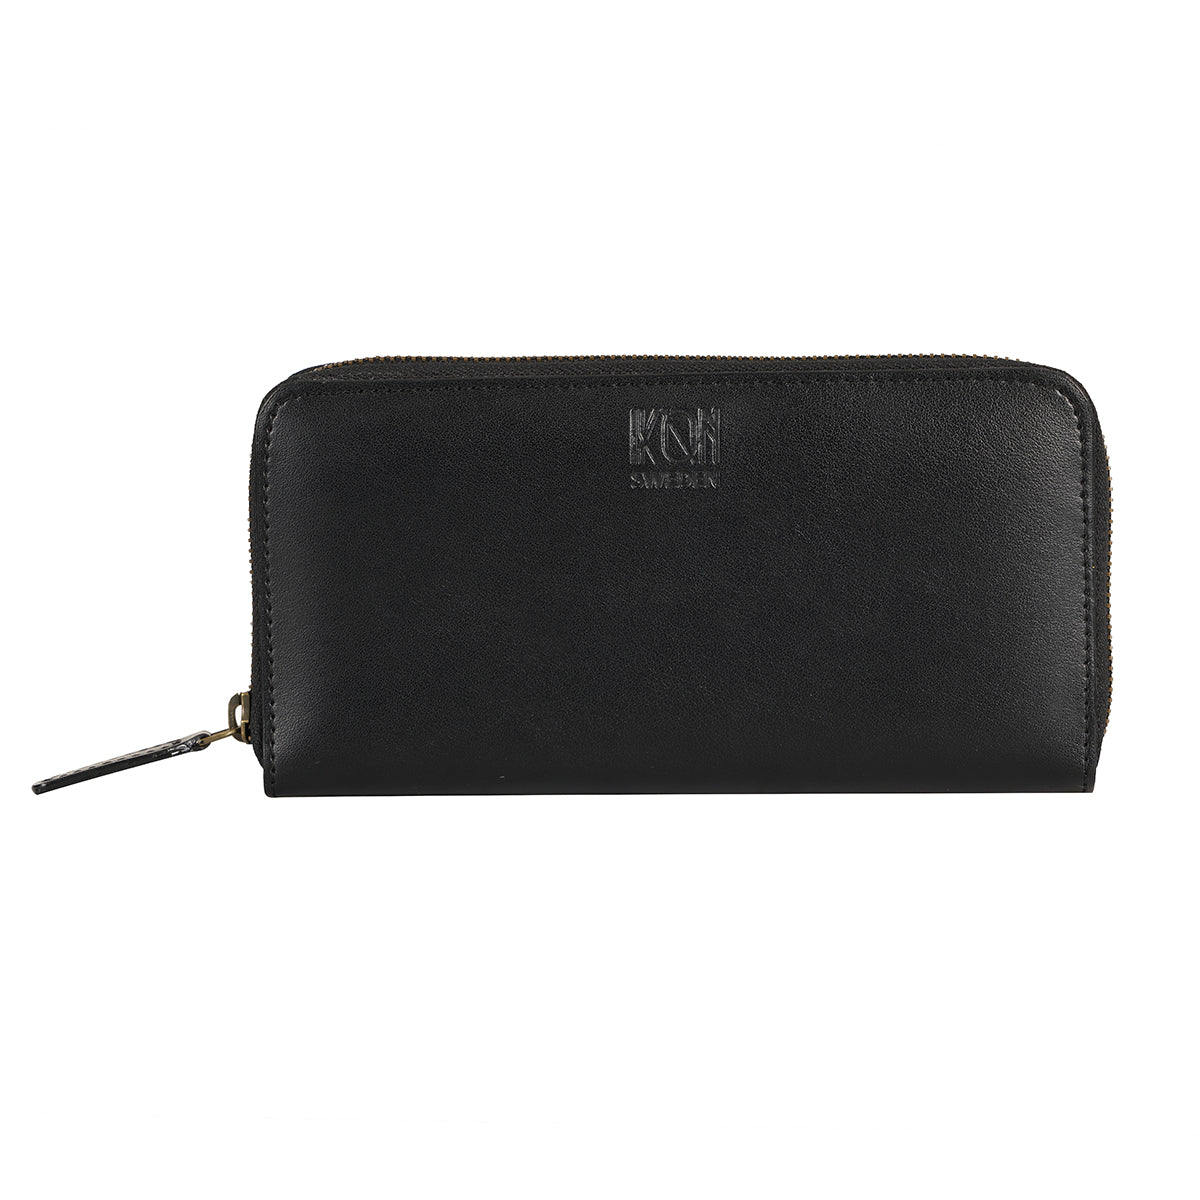 Apple Leather Long Zip Wallet for Women - Black